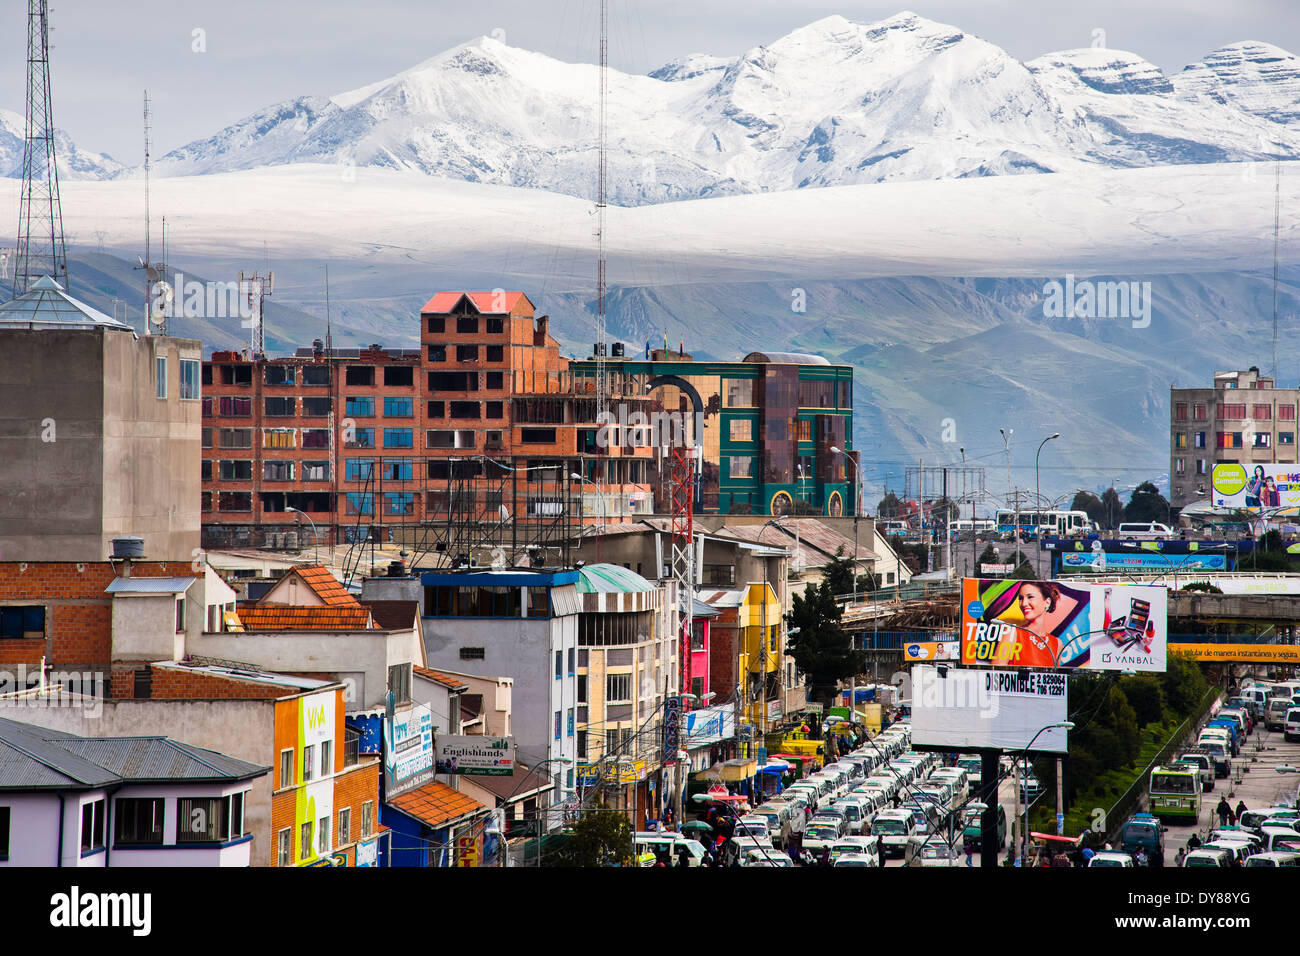 Cime coperte di neve delle Ande, con un traffico autostradale inceppamento in primo piano, sono visibili nella città di El Alto, Bolivia. Foto Stock